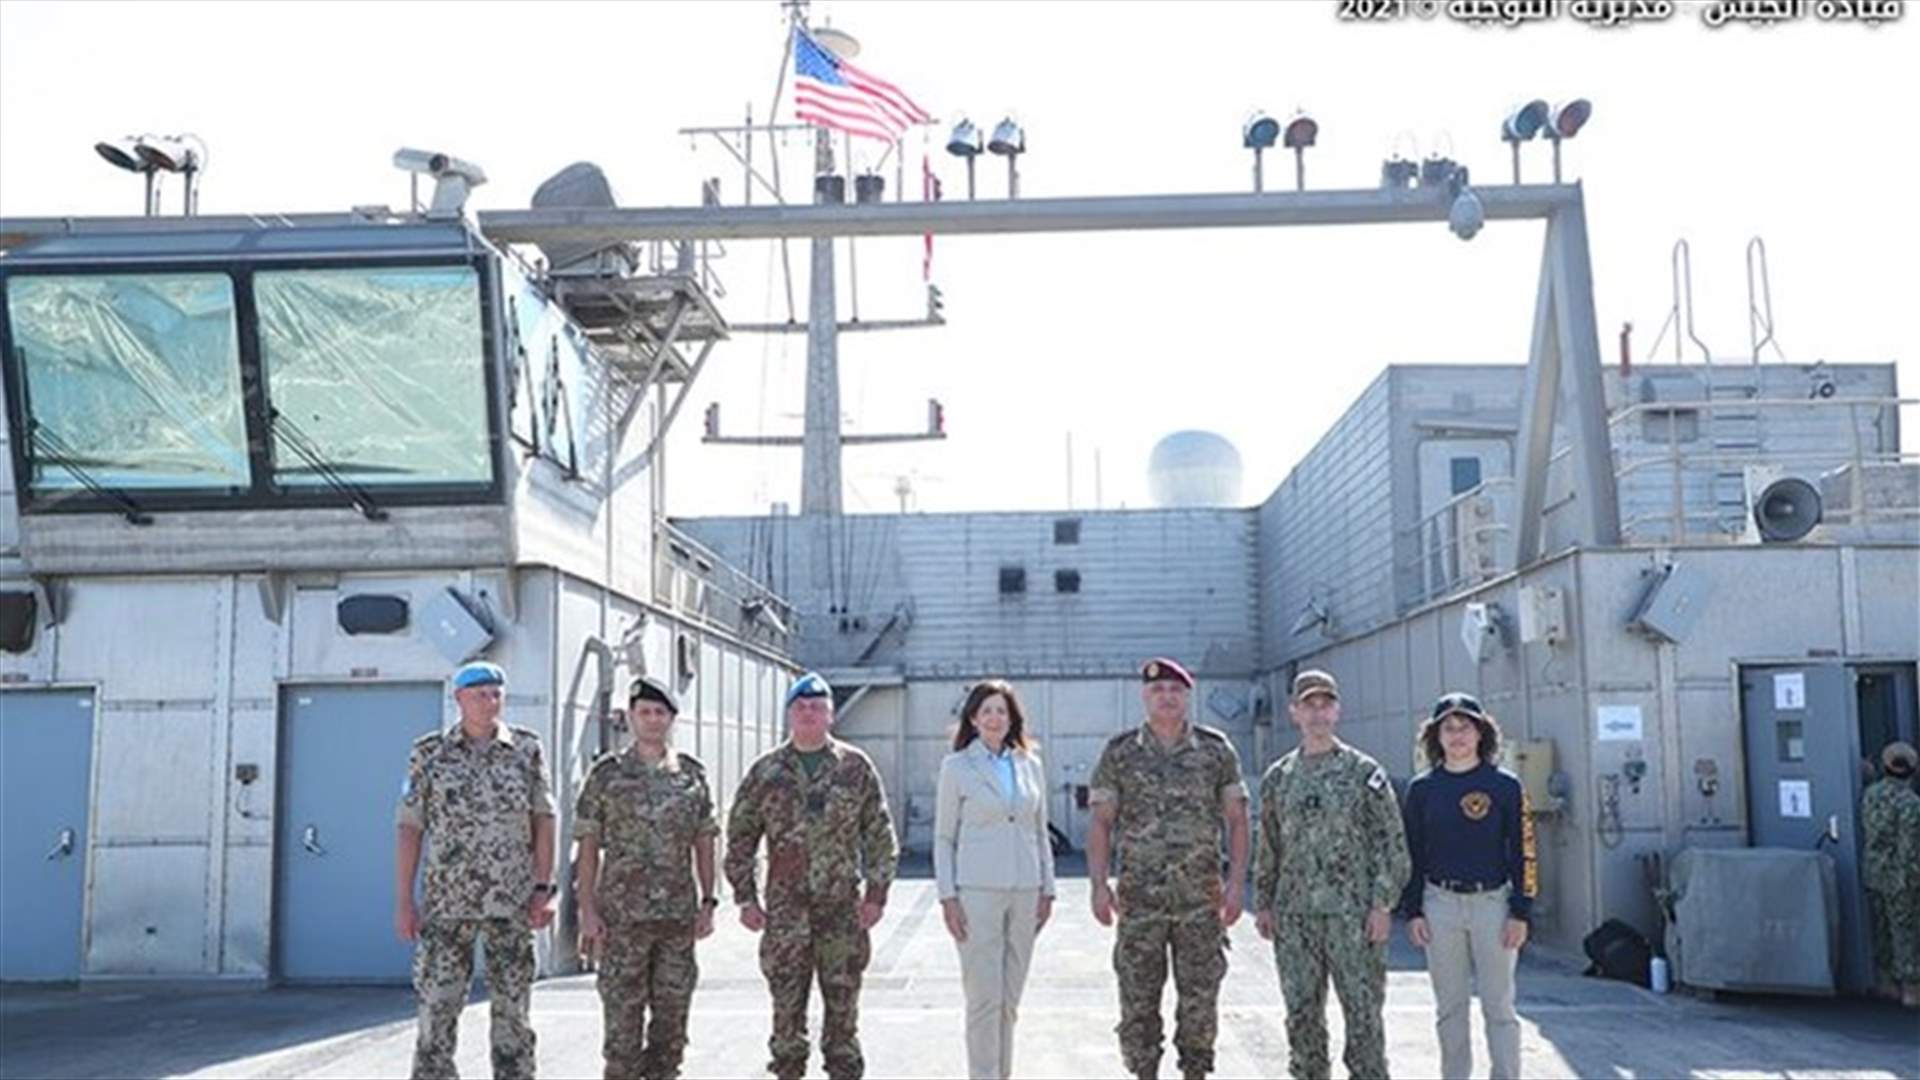 قائد الجيش يزور السفينة الأميركية في قاعدة بيروت البحرية... اليكم التفاصيل